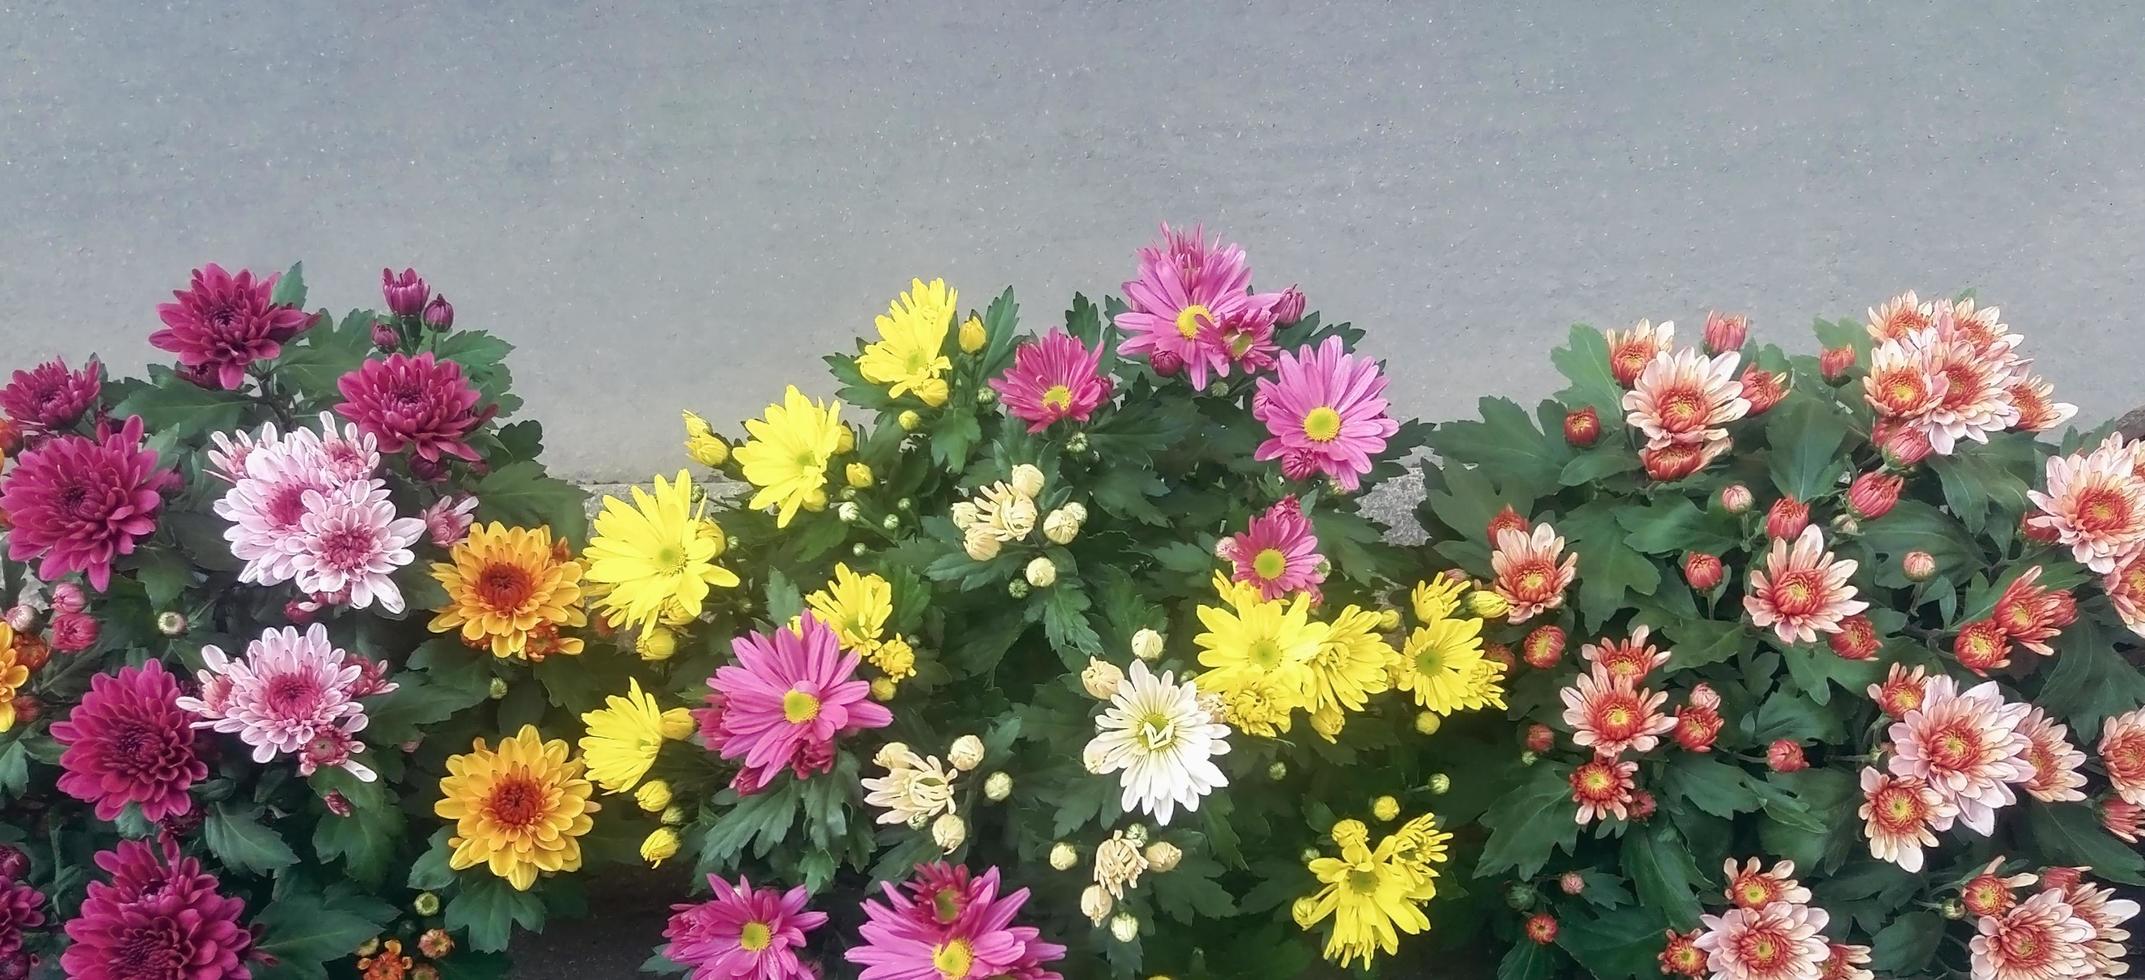 chrysanthemenblumen in verschiedenen farben auf asphaltiertem bürgersteig foto